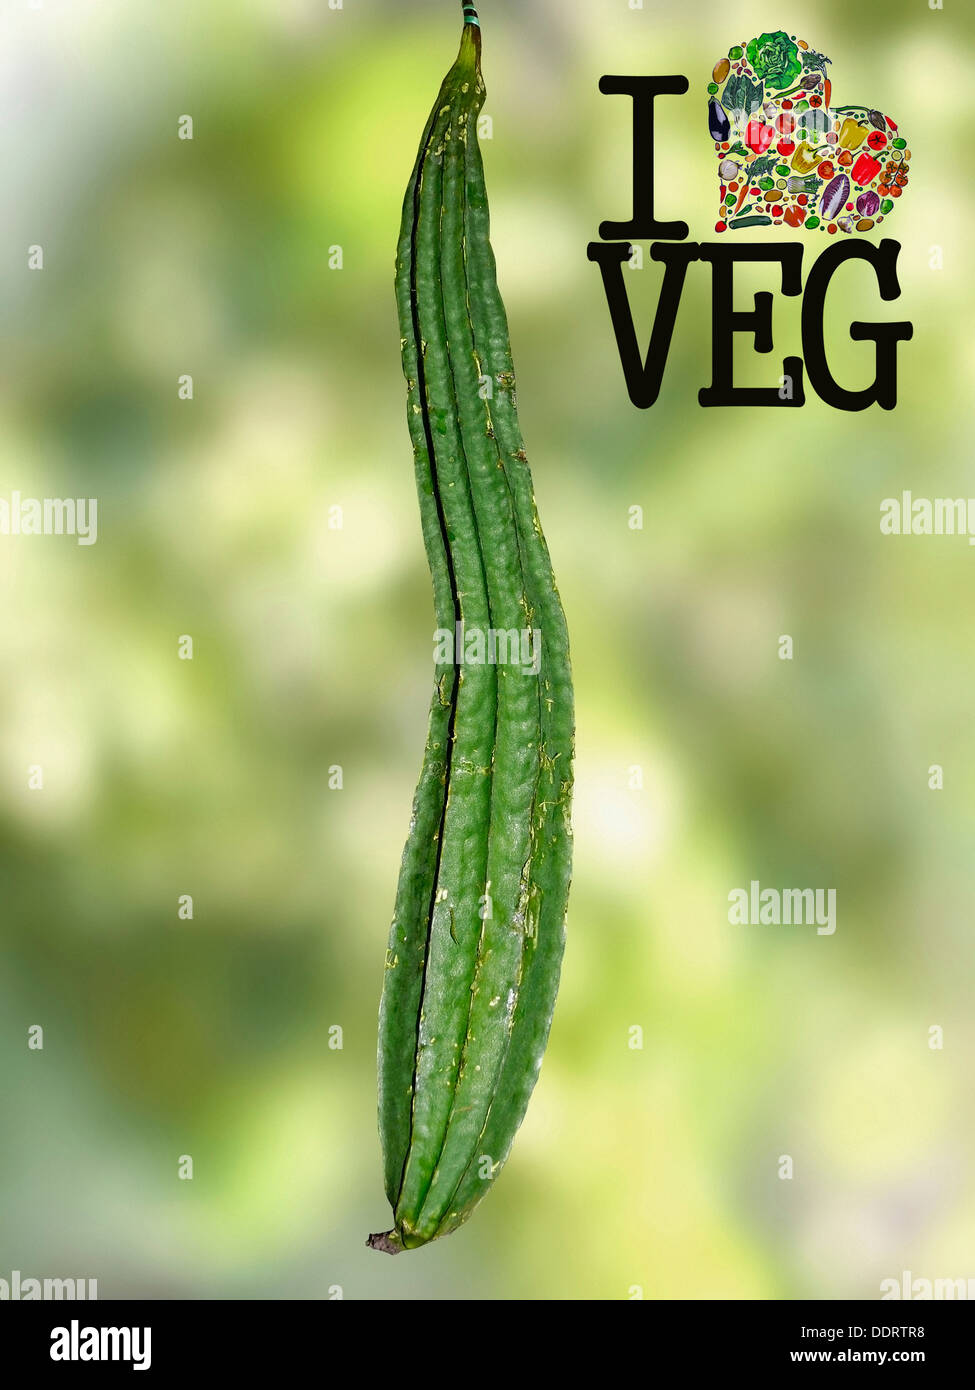 Loofa Acutangula, Cucumis acutangulus L, rendez-vous sur Veg, Concept Banque D'Images